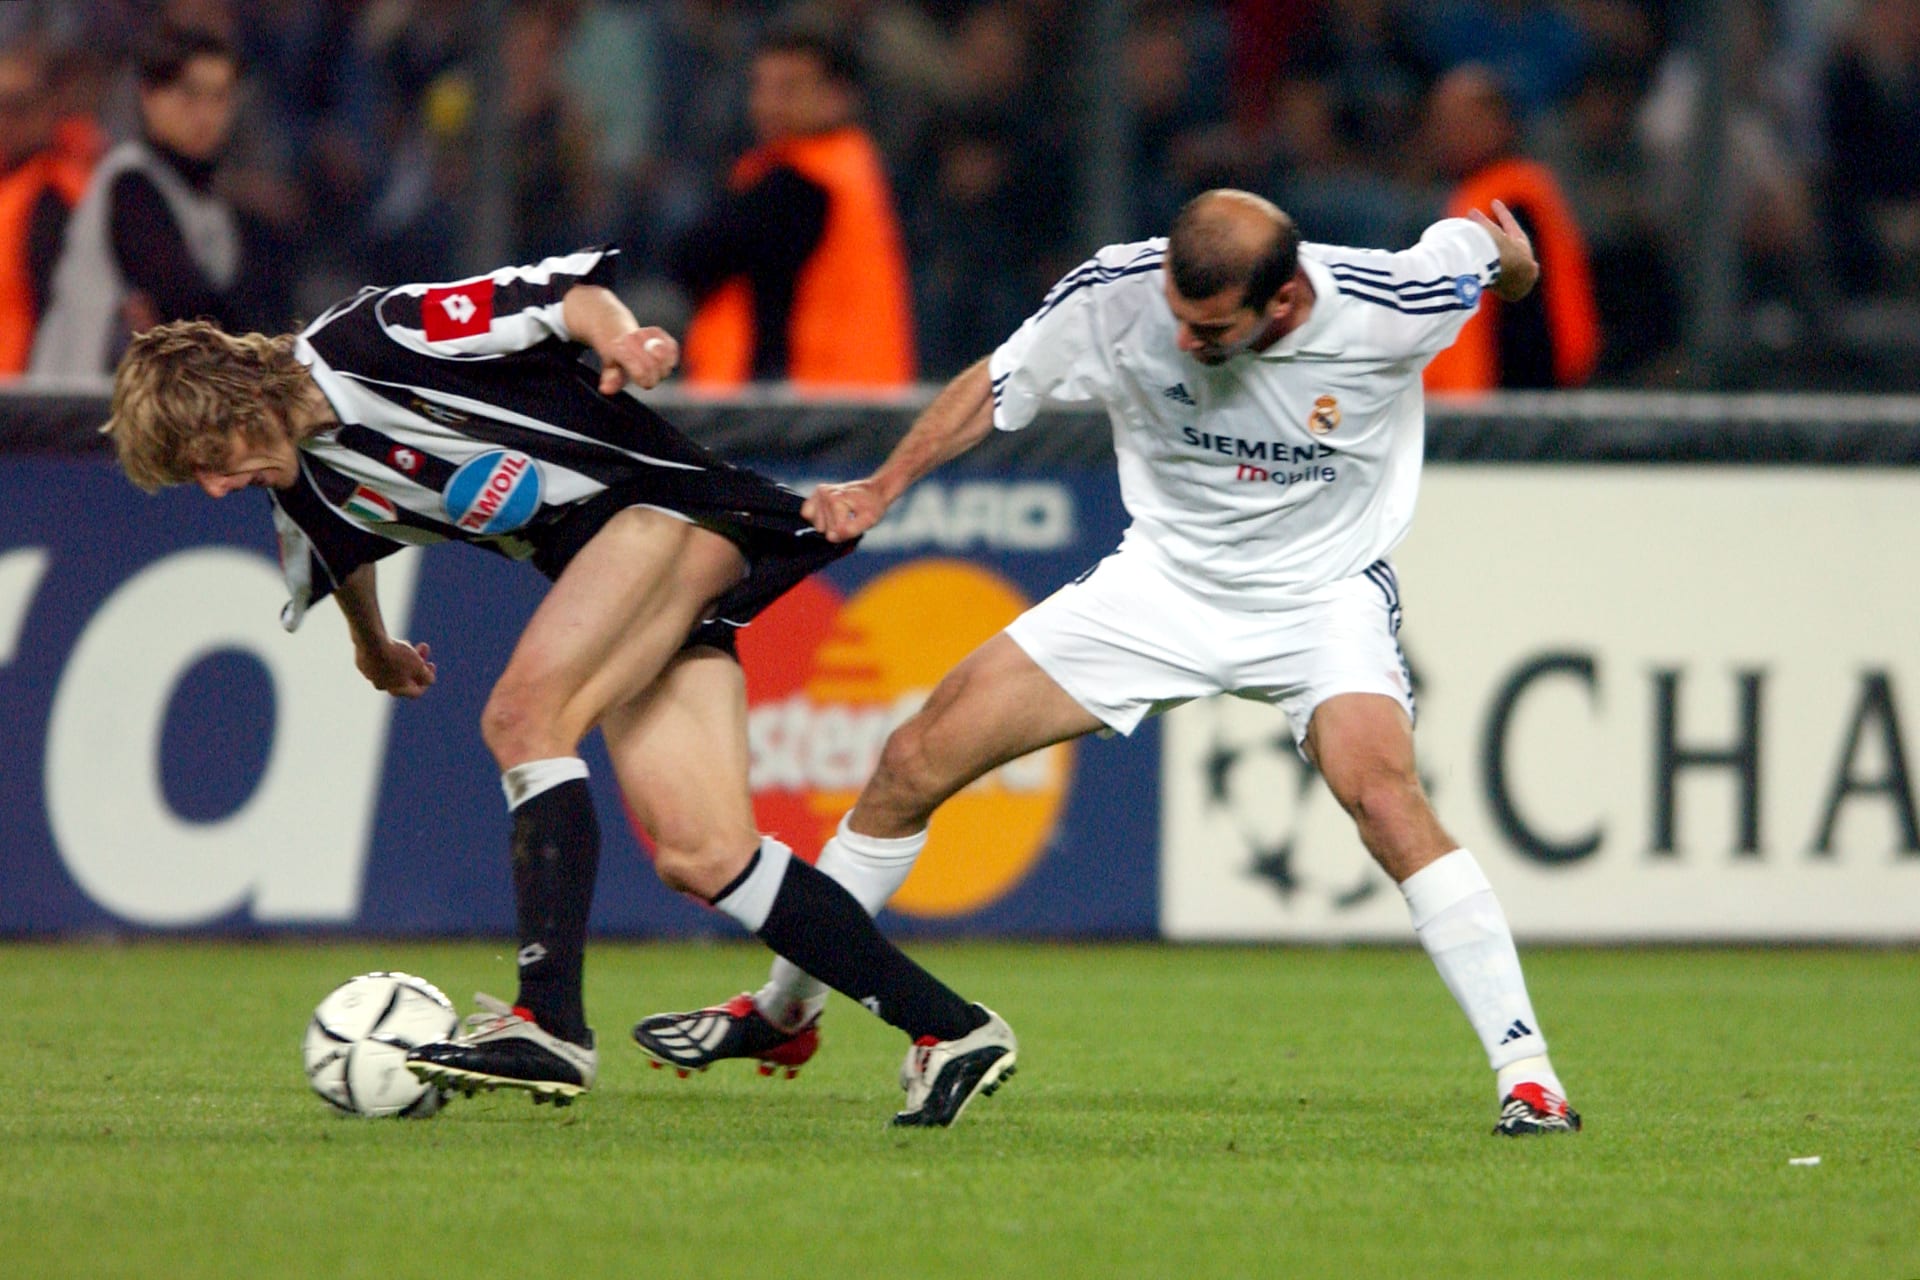 Nedvěd přišel do Juventusu za 45 milionů eur jako náhrada za Zinedina Zidana, který v roce 2001 odešel do Realu Madrid. Na fotce se právě francouzský kouzelník snaží nedovoleně zastavit českou hvězdu.